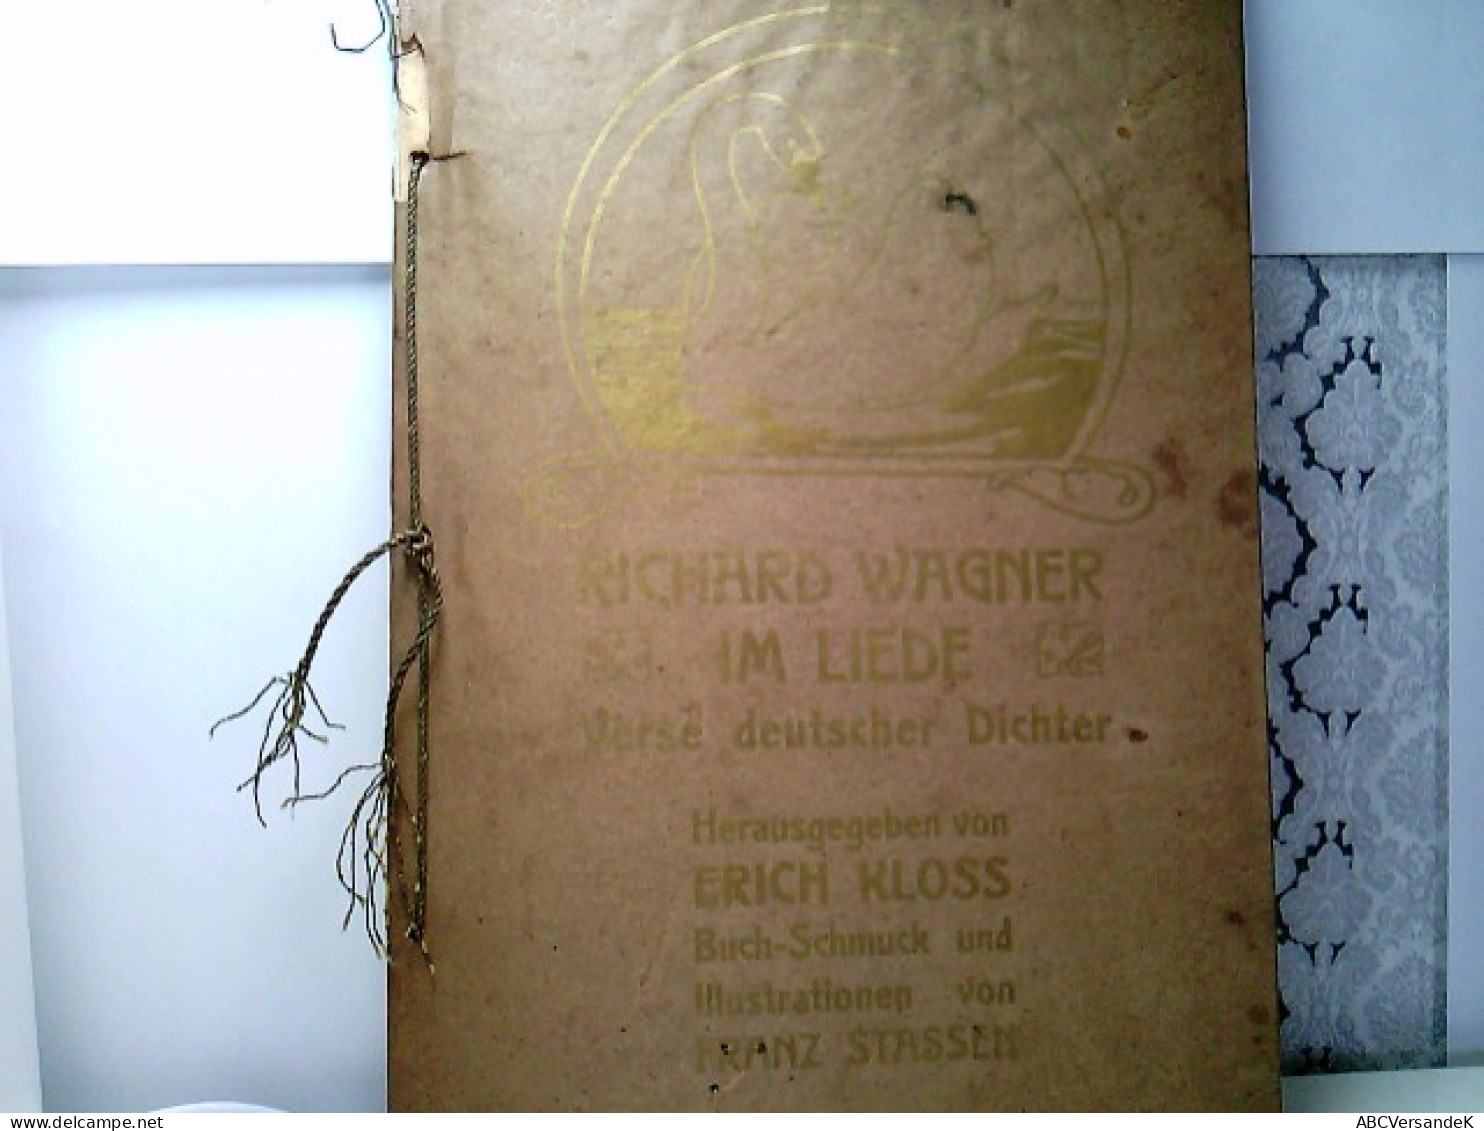 Richard Wagner Im Liede. Verse Deutscher Dichter. - Autores Alemanes